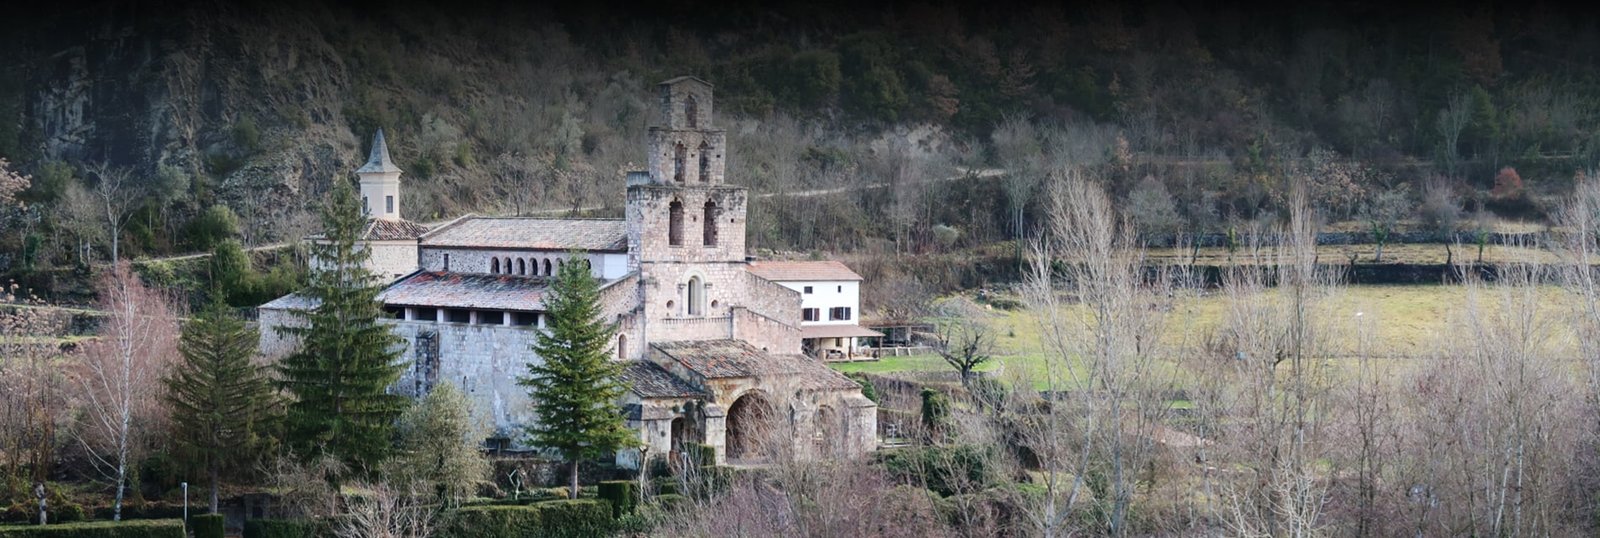 Monasterio de Santa Maria de Geri de la Sal header - Origenes de Europa